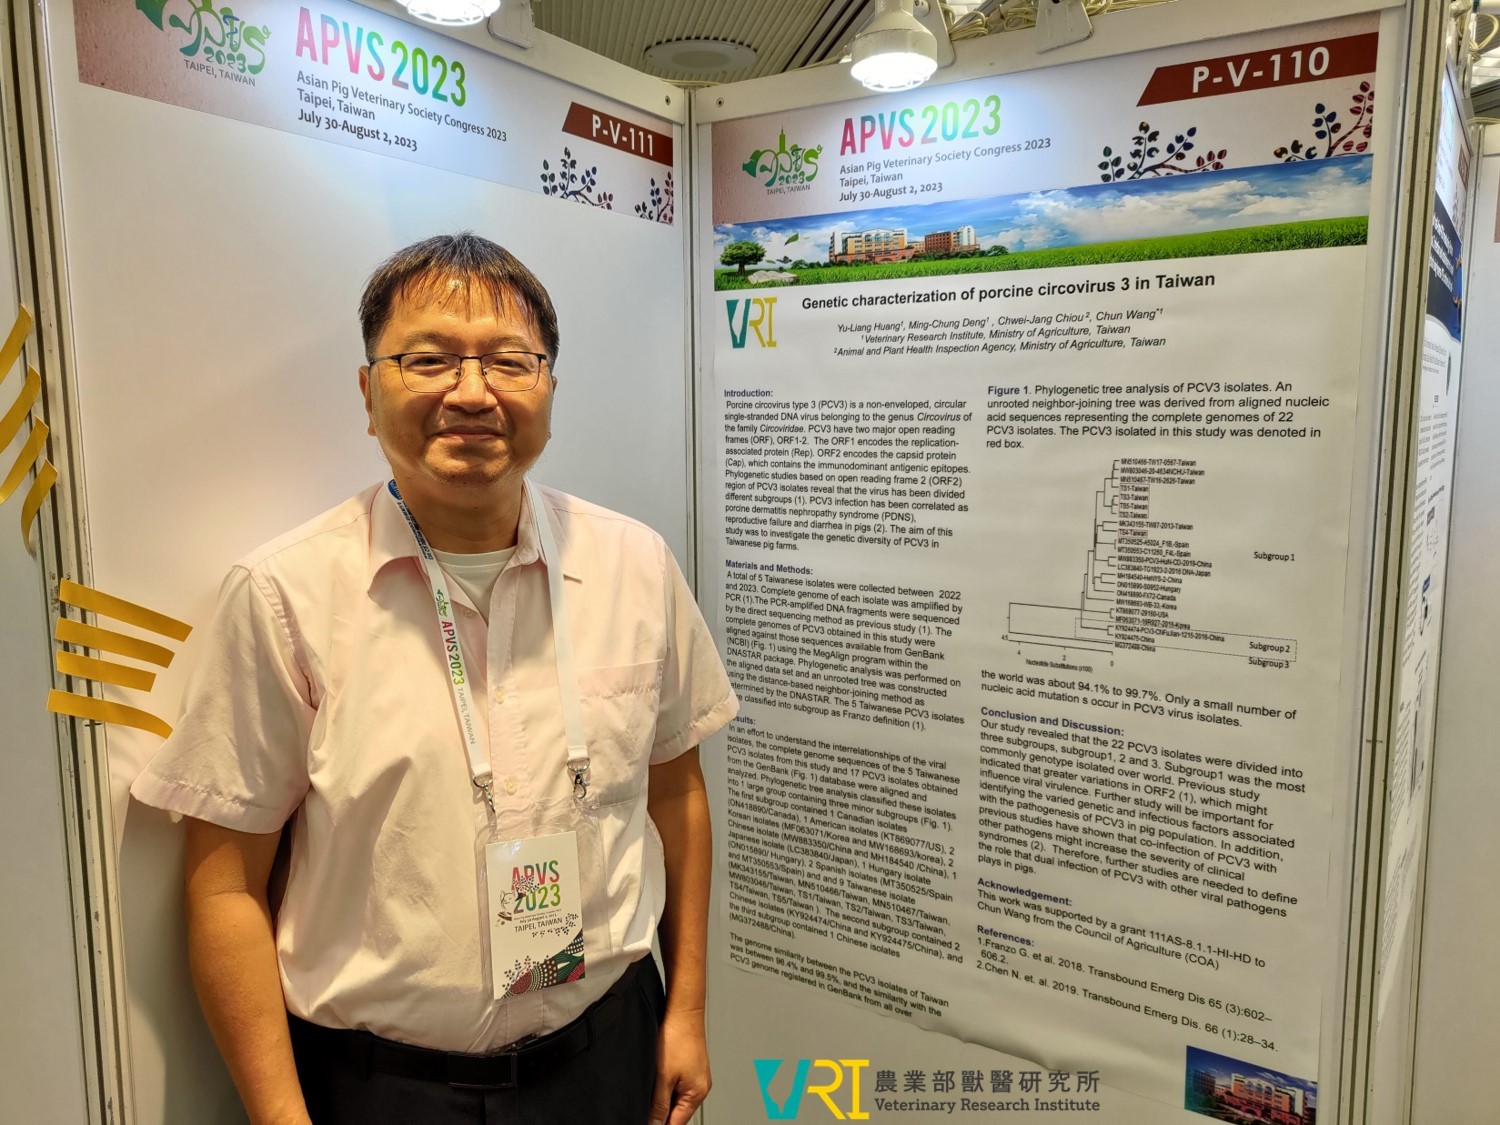 本所王羣助理研究員於本屆亞洲豬病年會發表壁報論文「Genetic characterization of porcine circovirus 3 in Taiwan」。